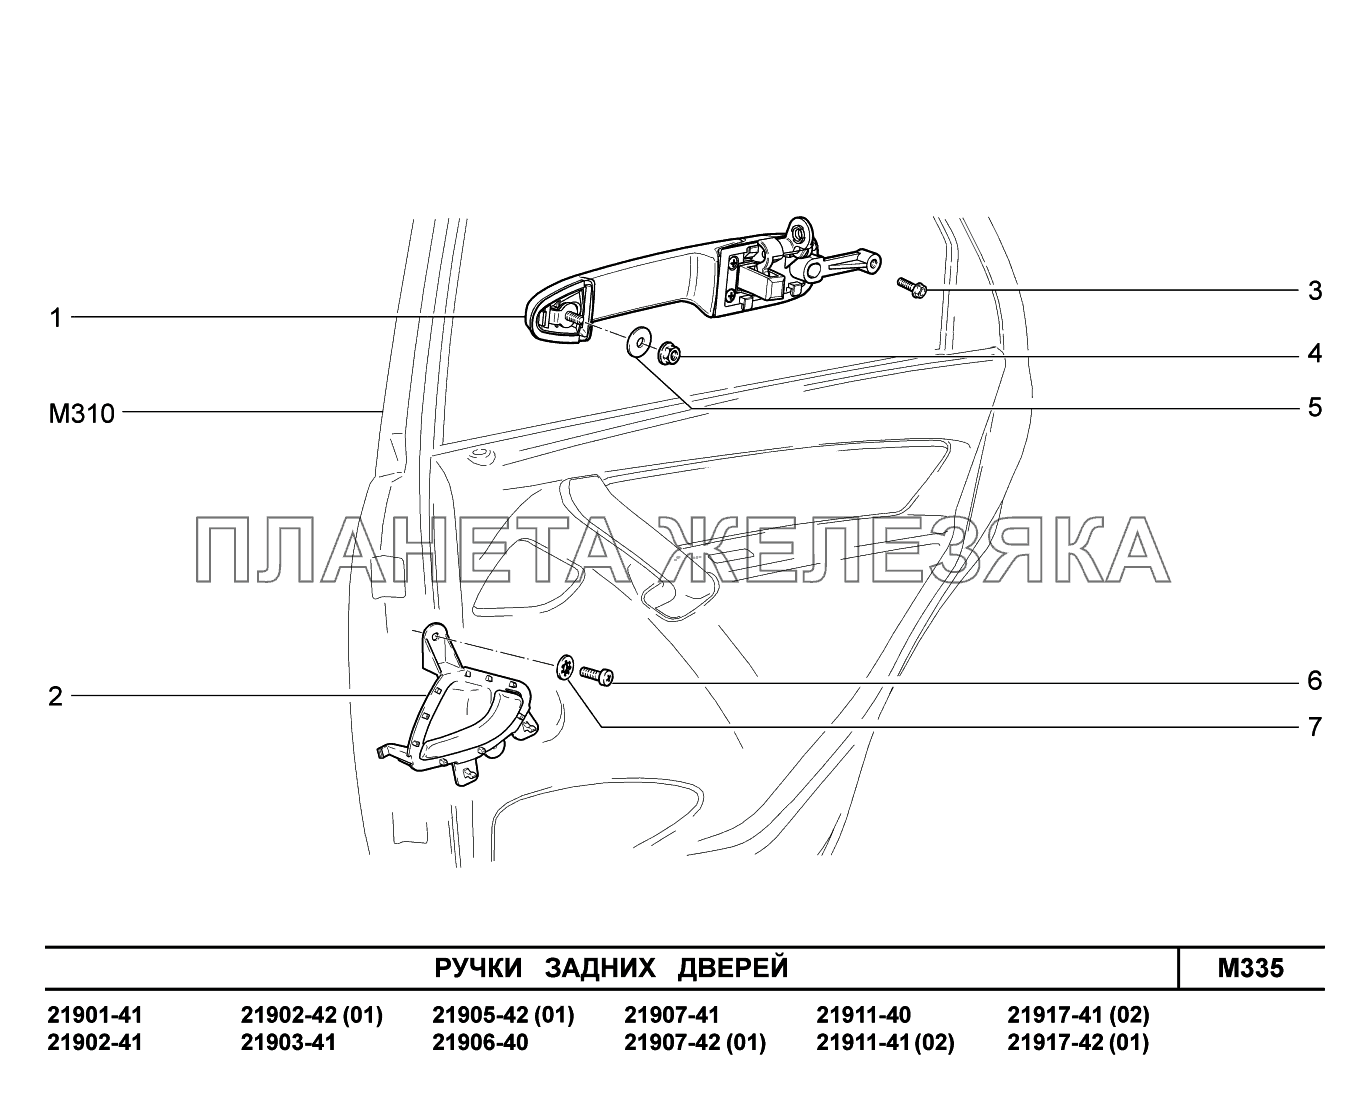 M335. Ручки задних дверей Lada Granta-2190